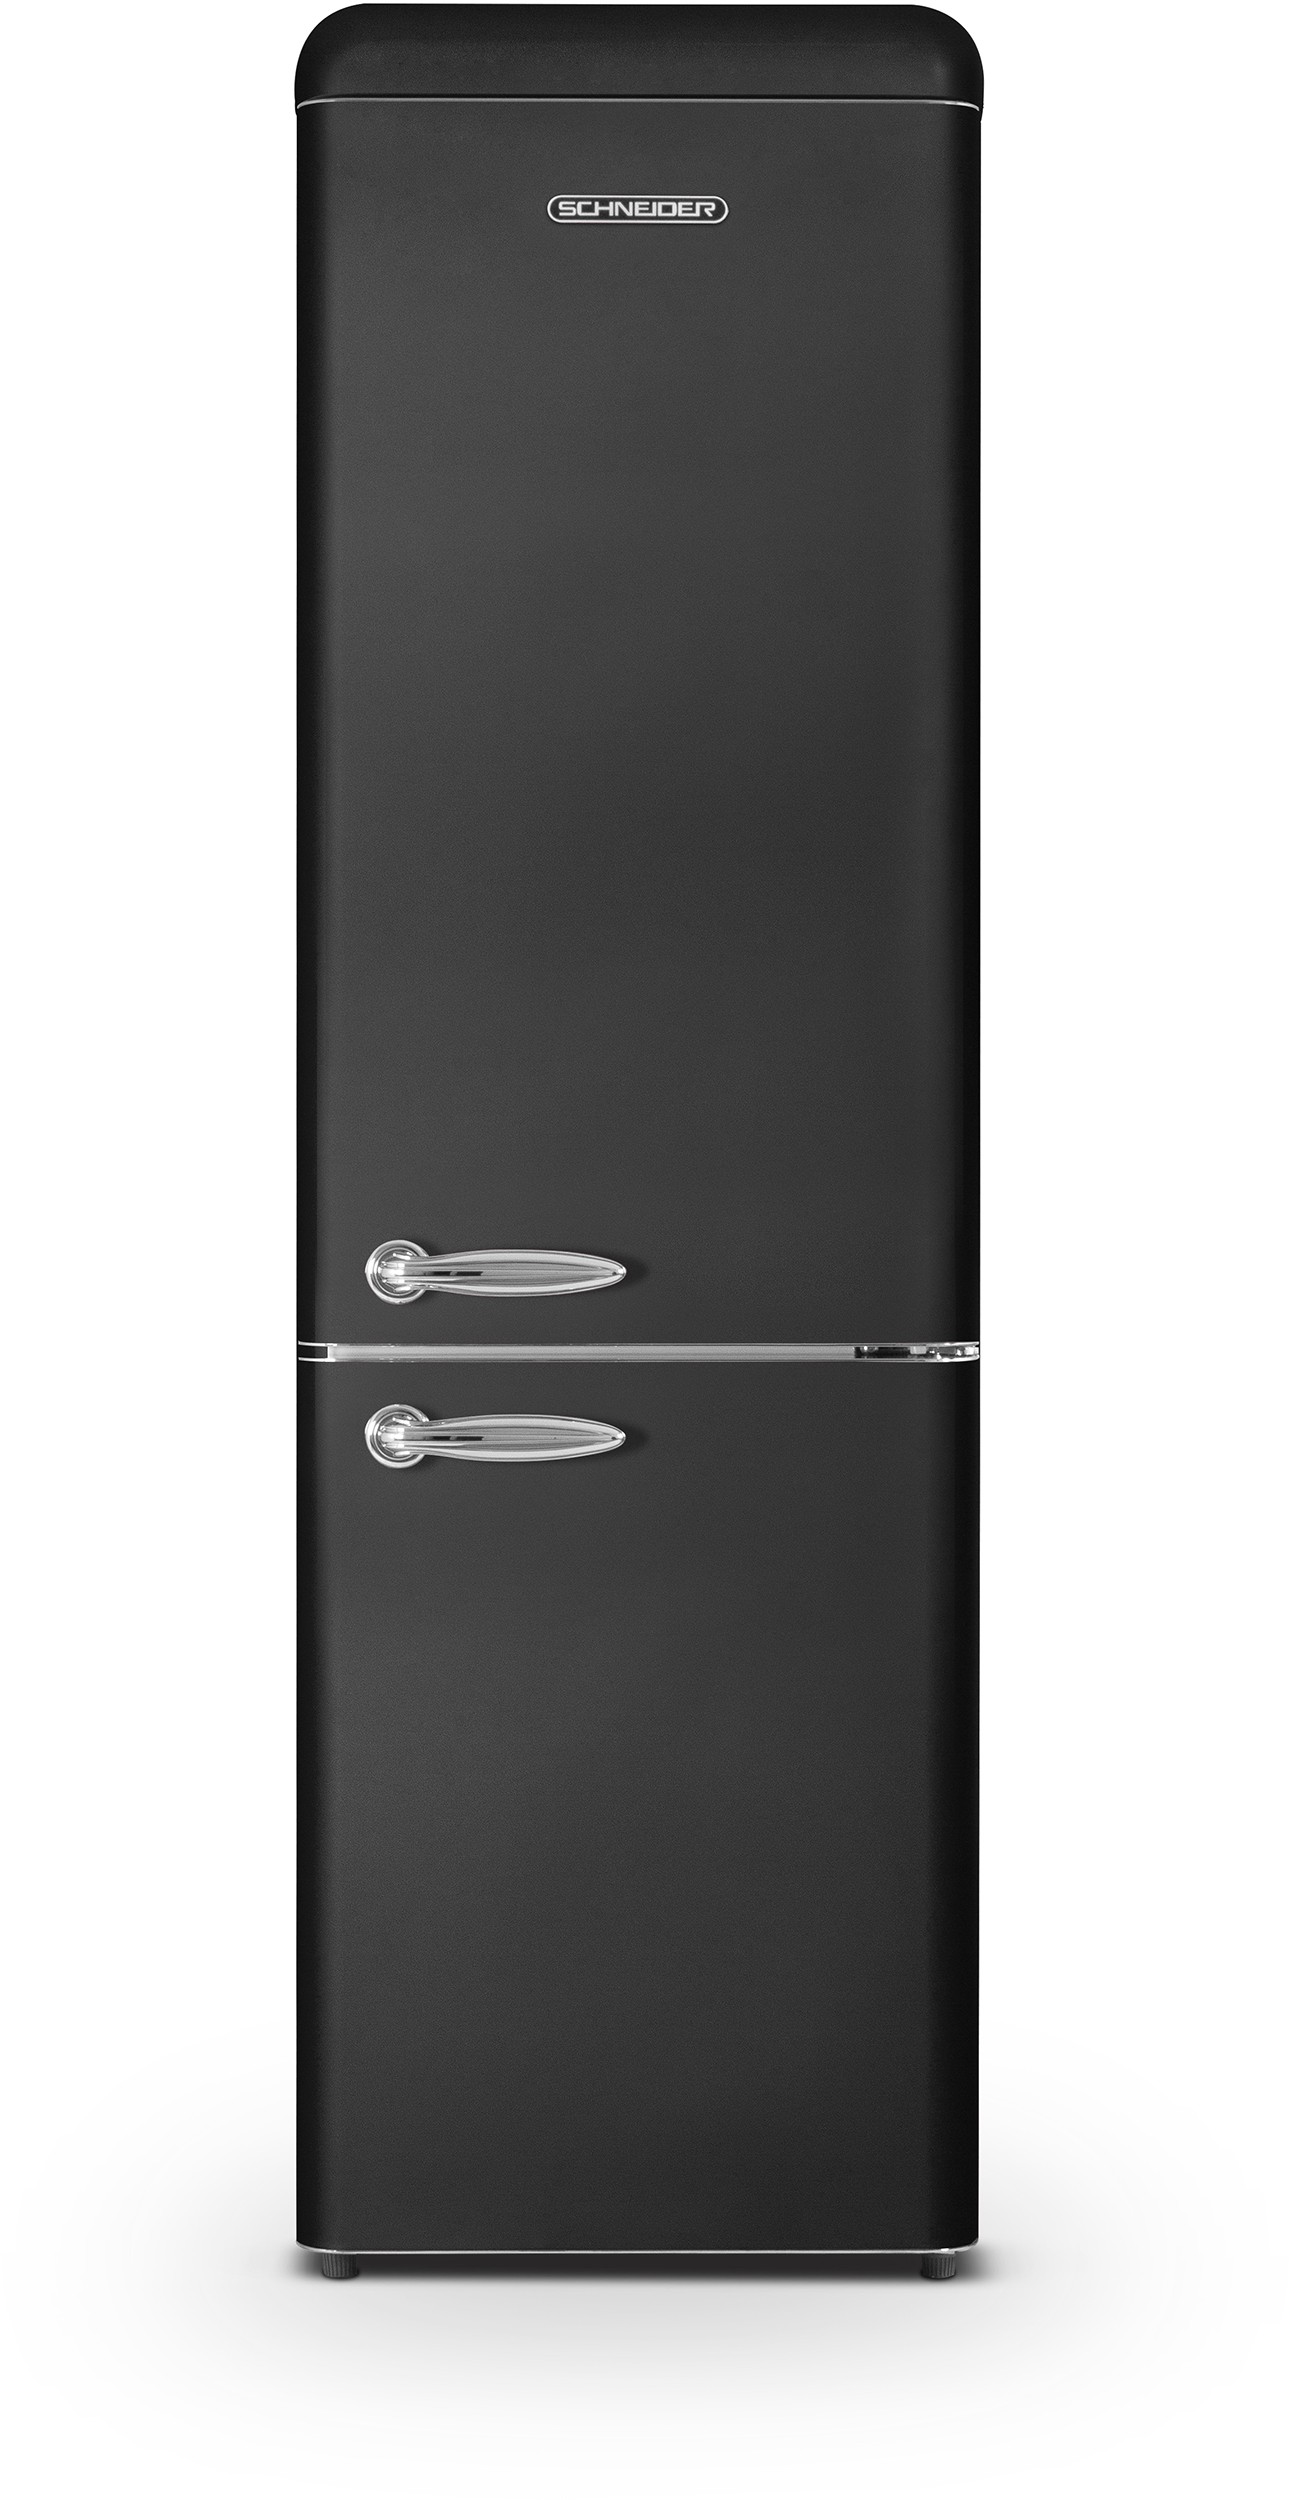 SCHNEIDER Réfrigérateur congélateur bas   SCCB250VB